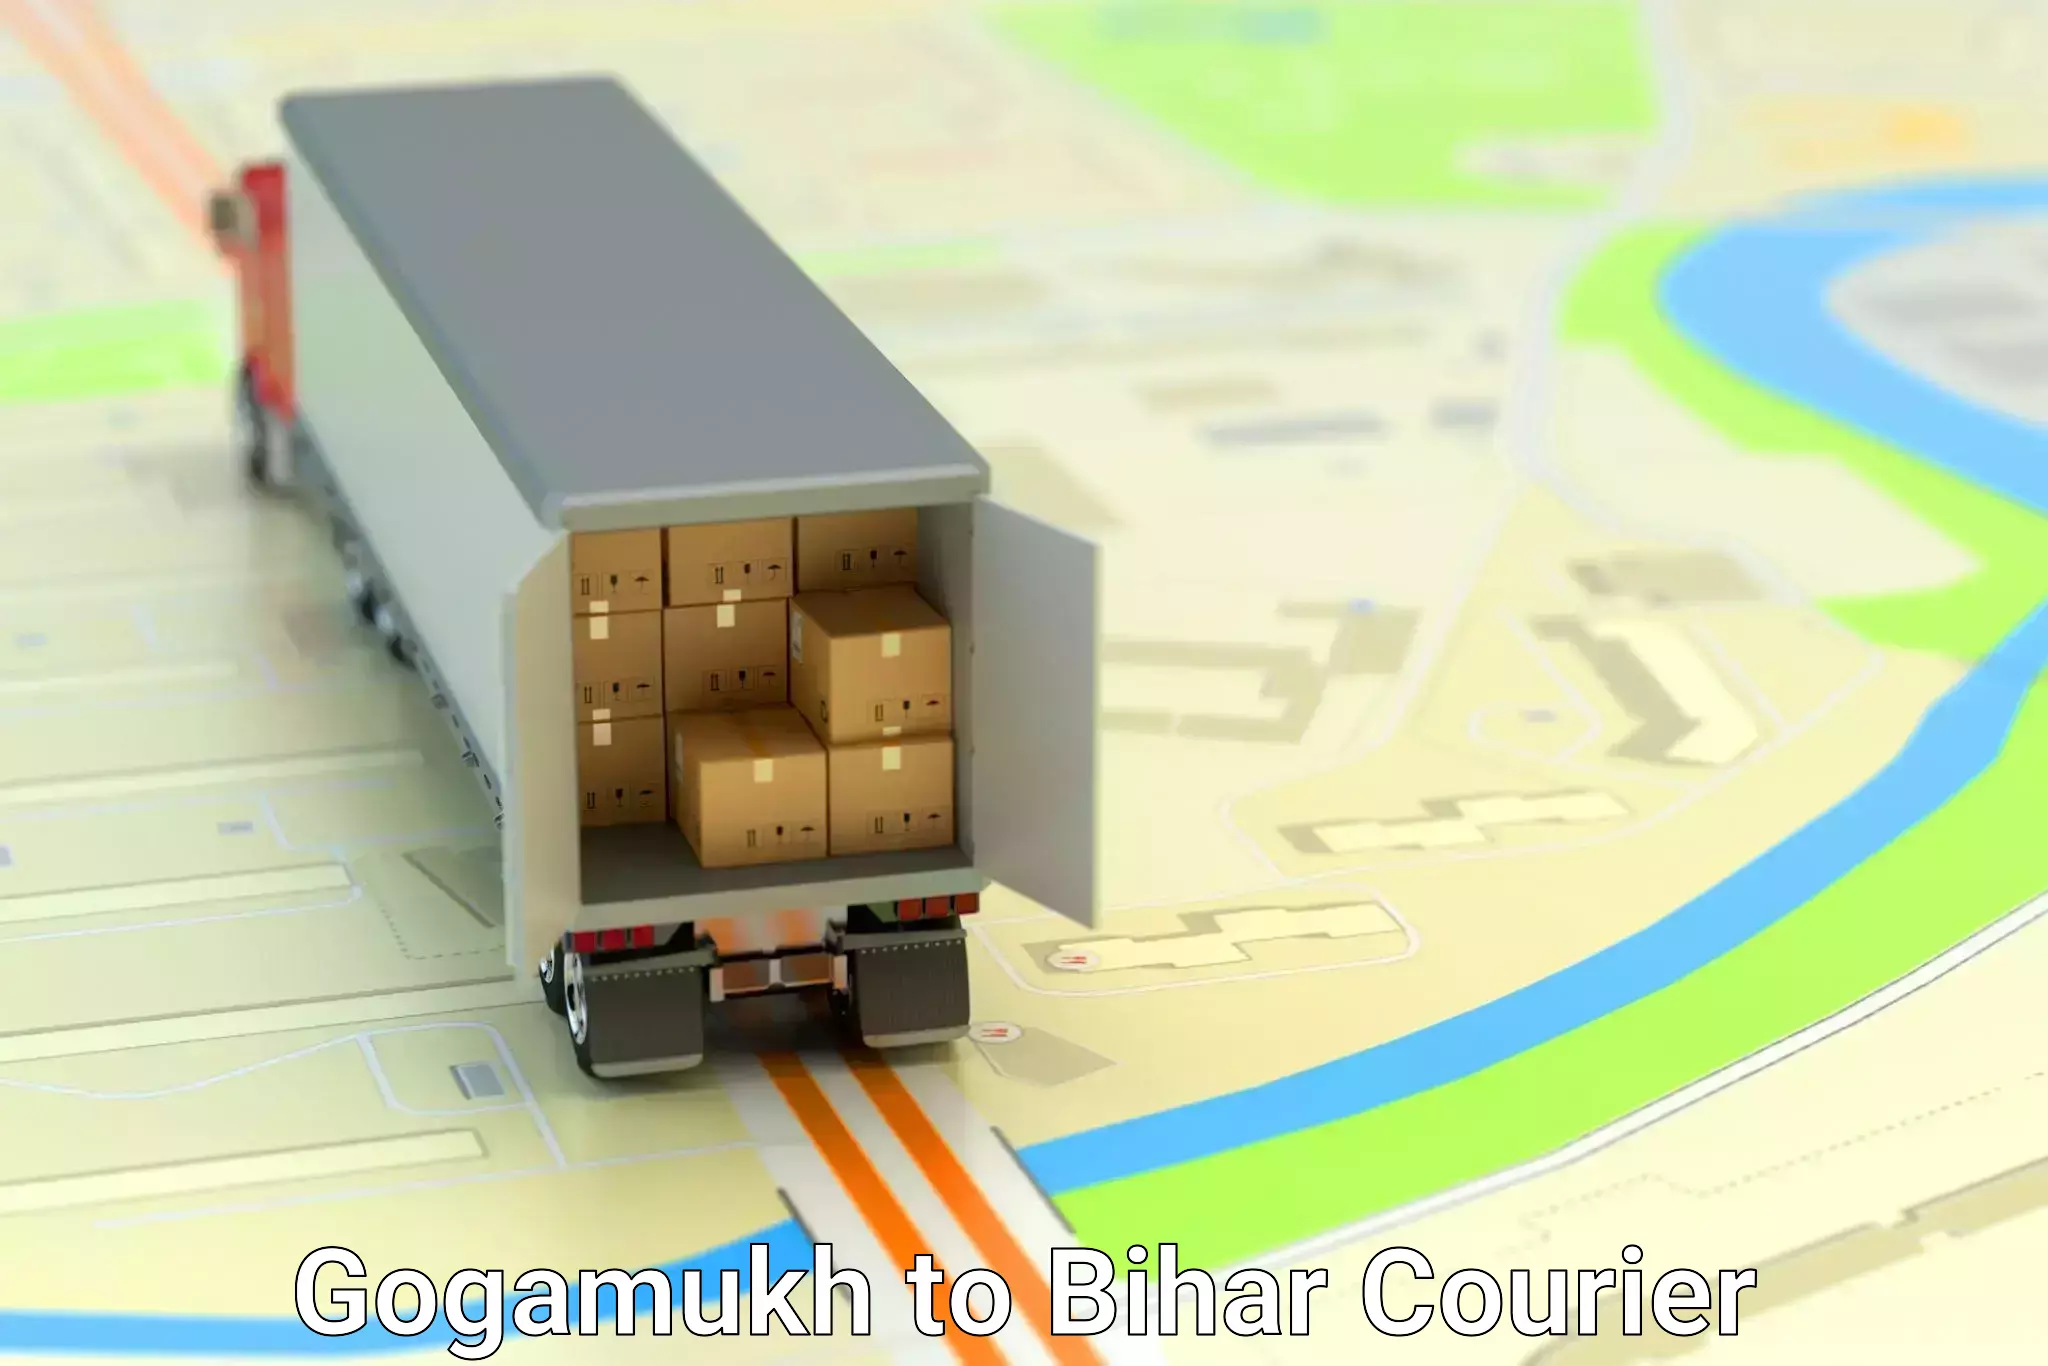 Tech-enabled shipping Gogamukh to Minapur